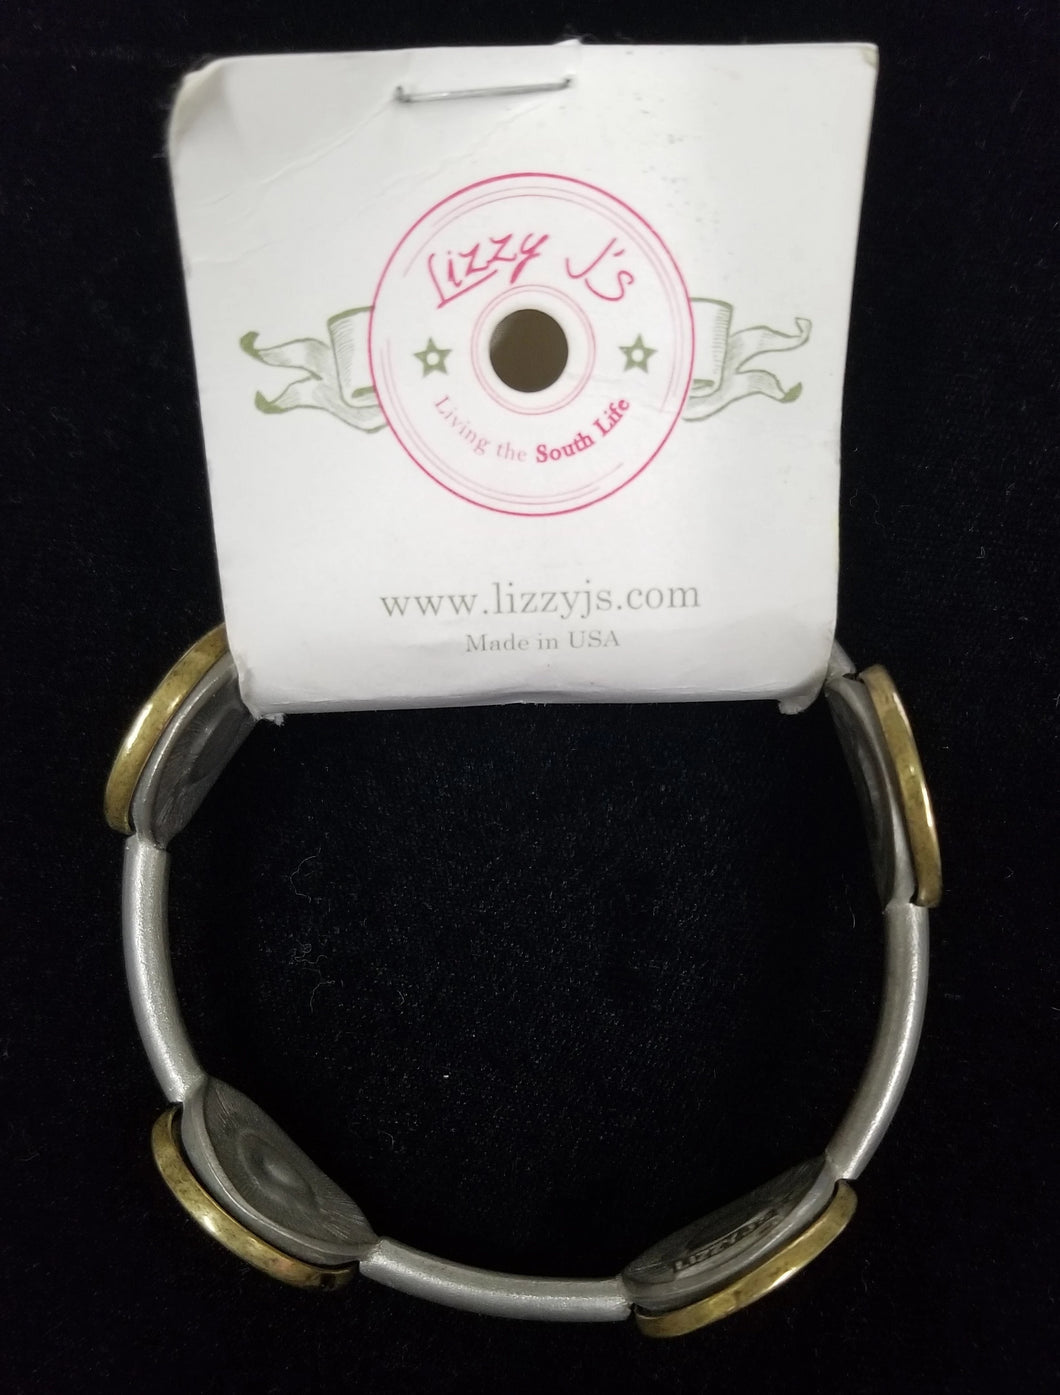 Lizzy Js Vintage Gray Bullet Bracelet